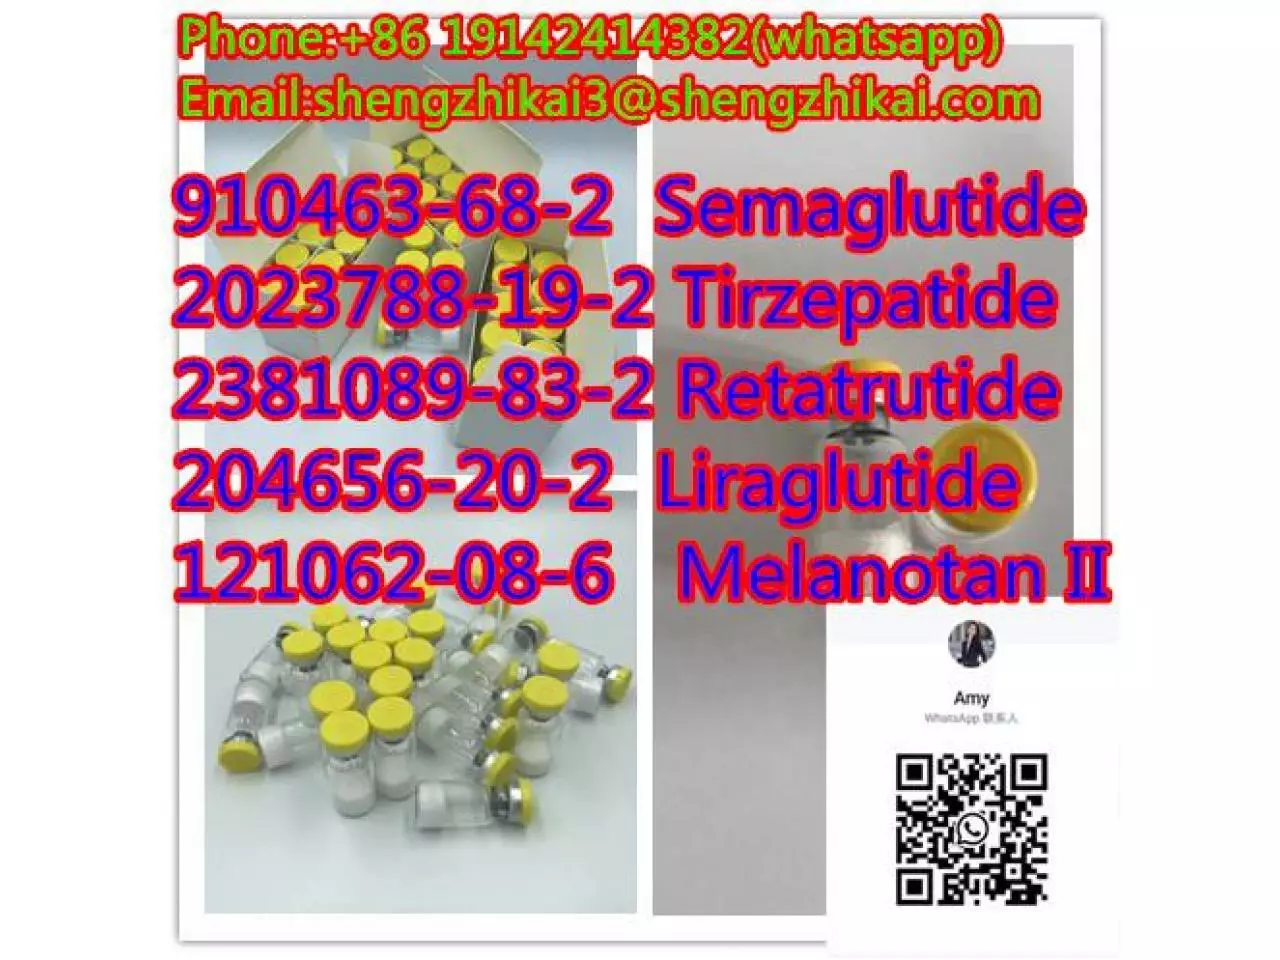 مصنع توريد Tirzepatide Gip\GLP-1 CAS 2023788-19-2 لتخفيف الوزن - 6/9